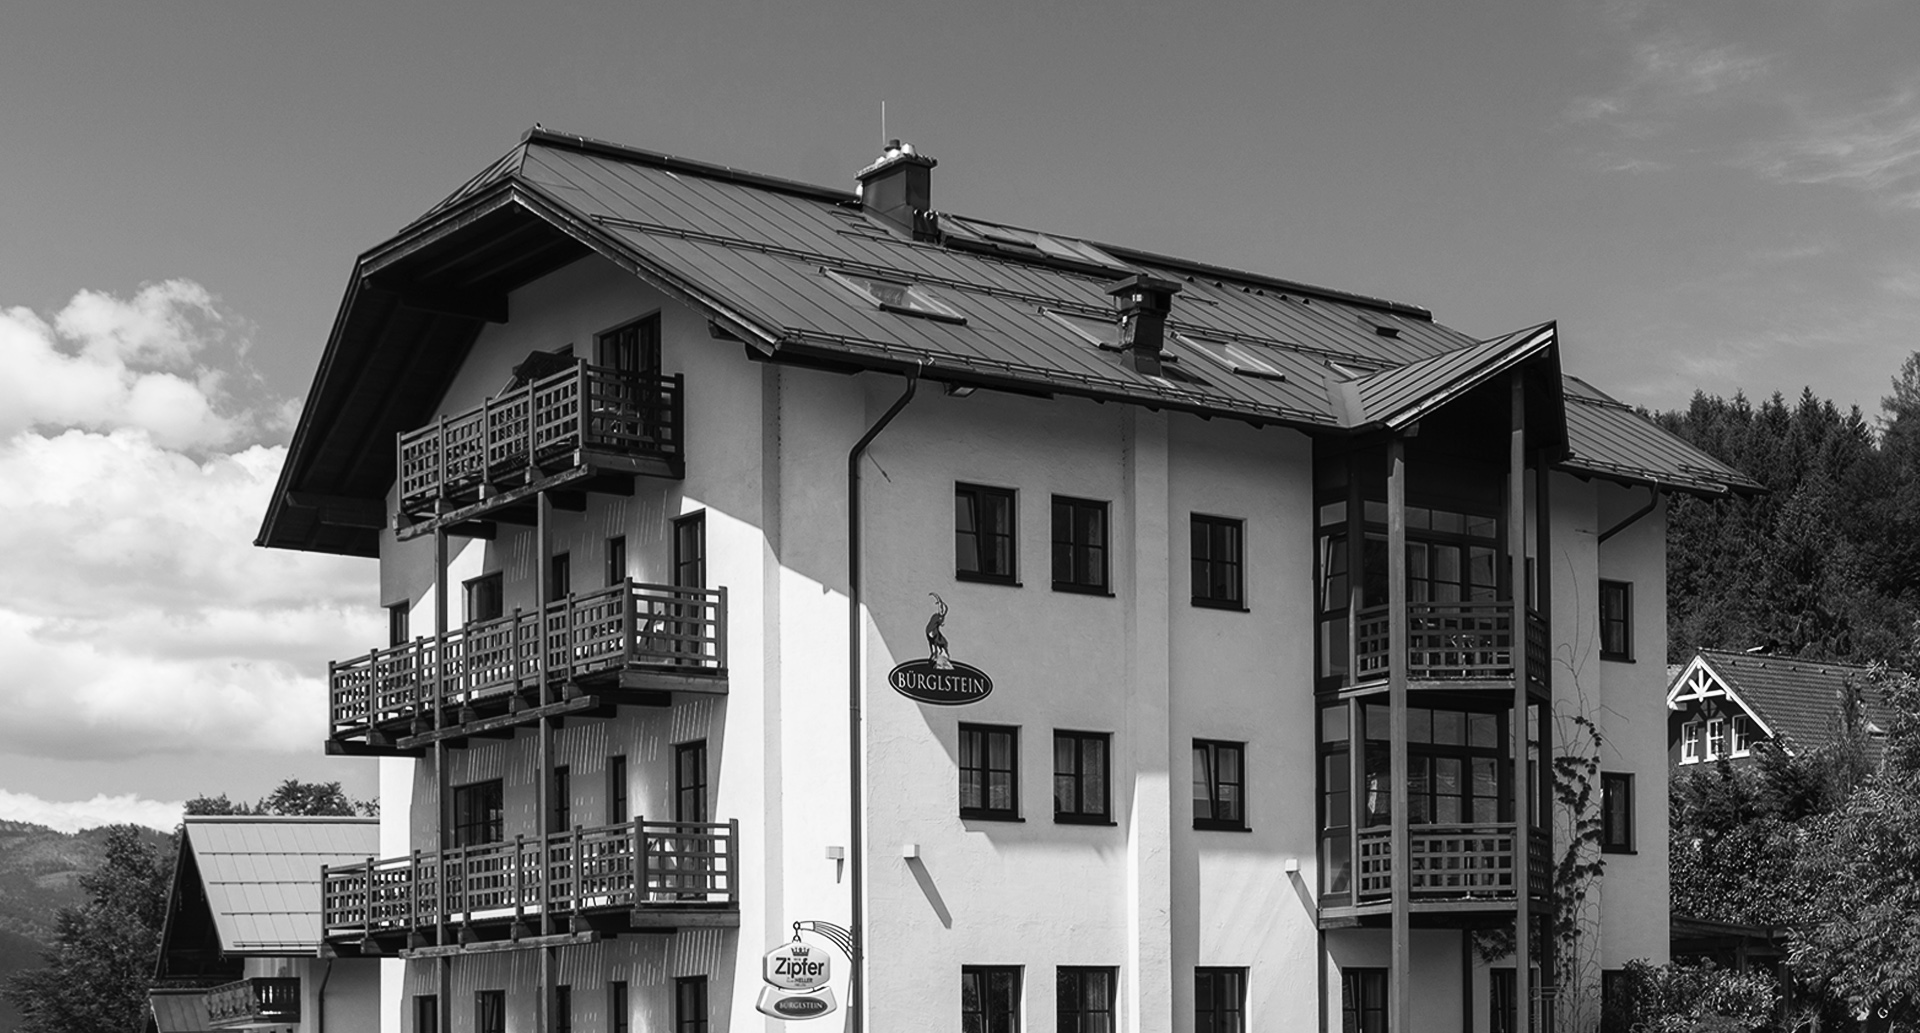 Hotel & Restaurant Bürglstein am Wolfgangsee